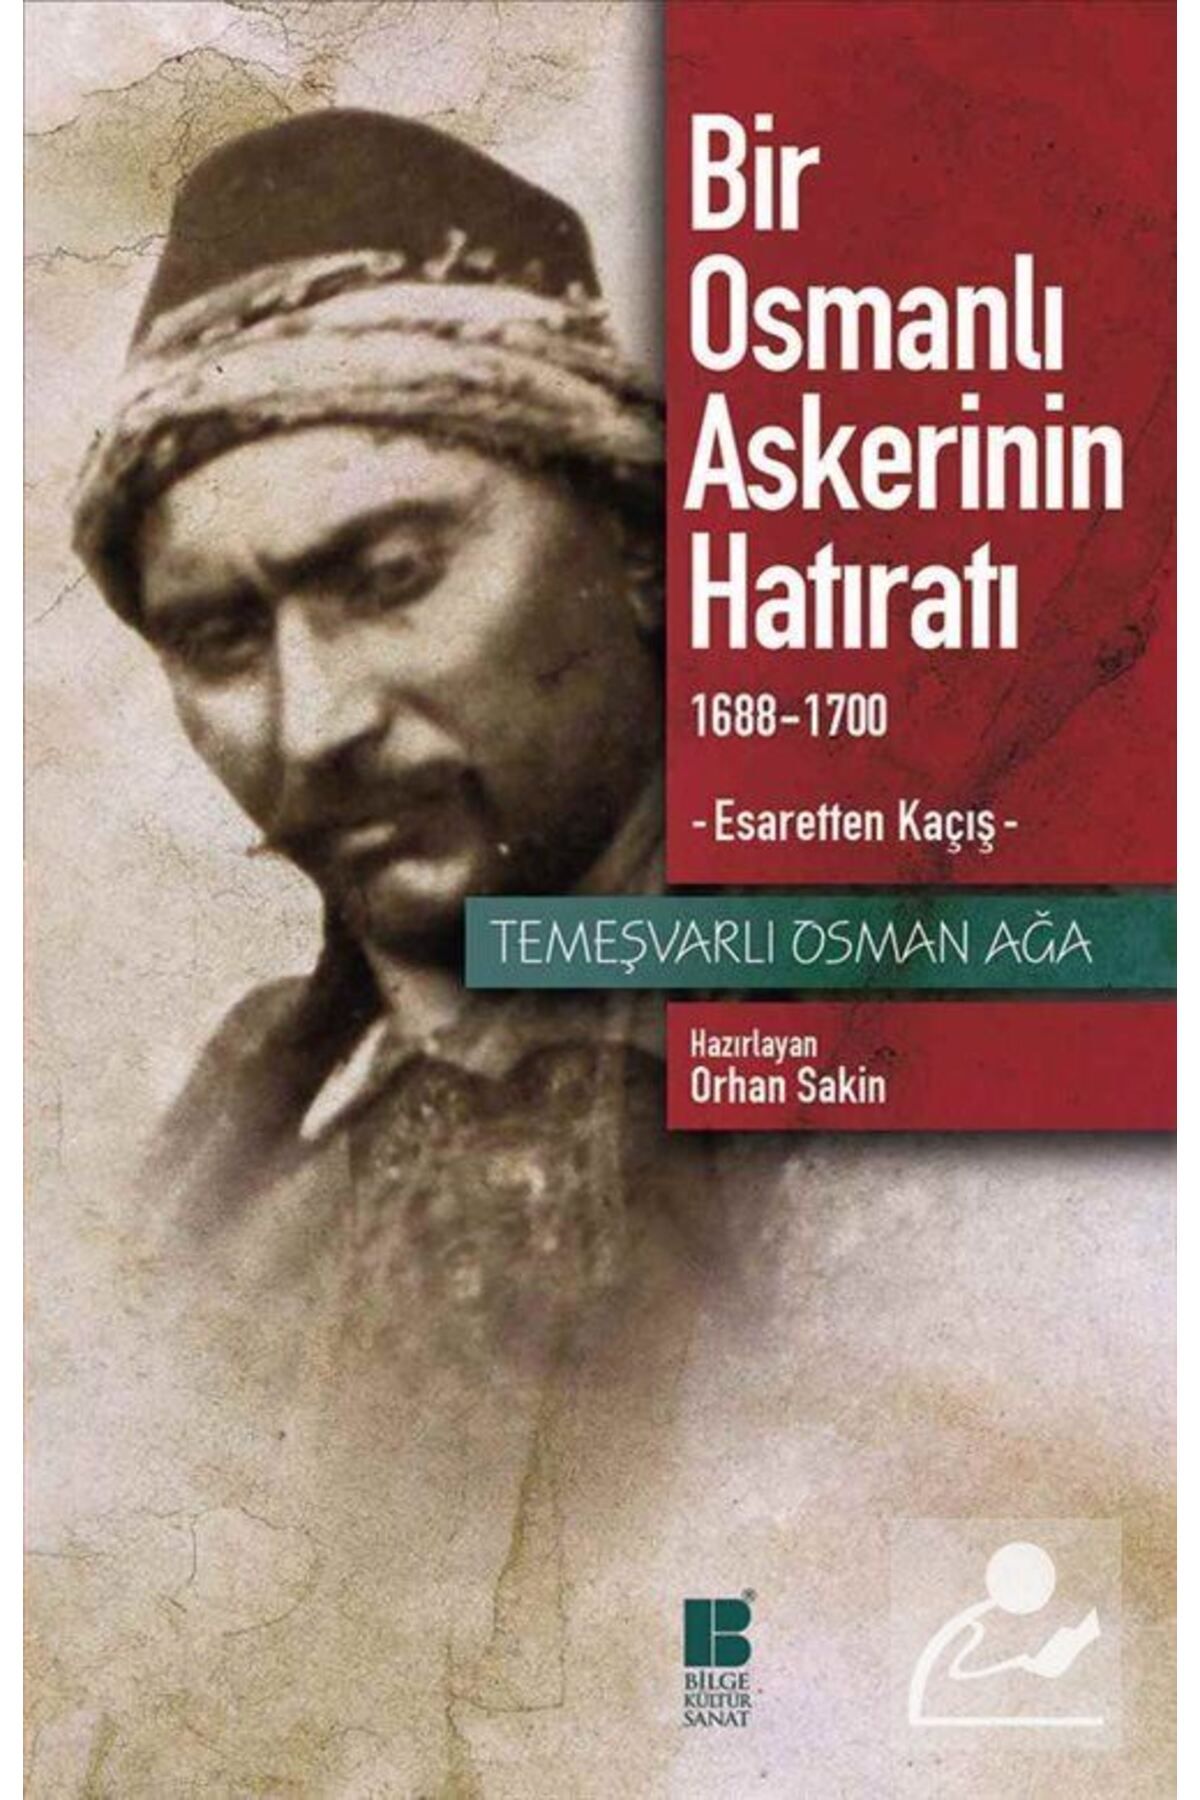 Bilge Kültür Sanat Bir Osmanlı Askerinin Hatıratı & 1688-1700 Esaretten Kaçış